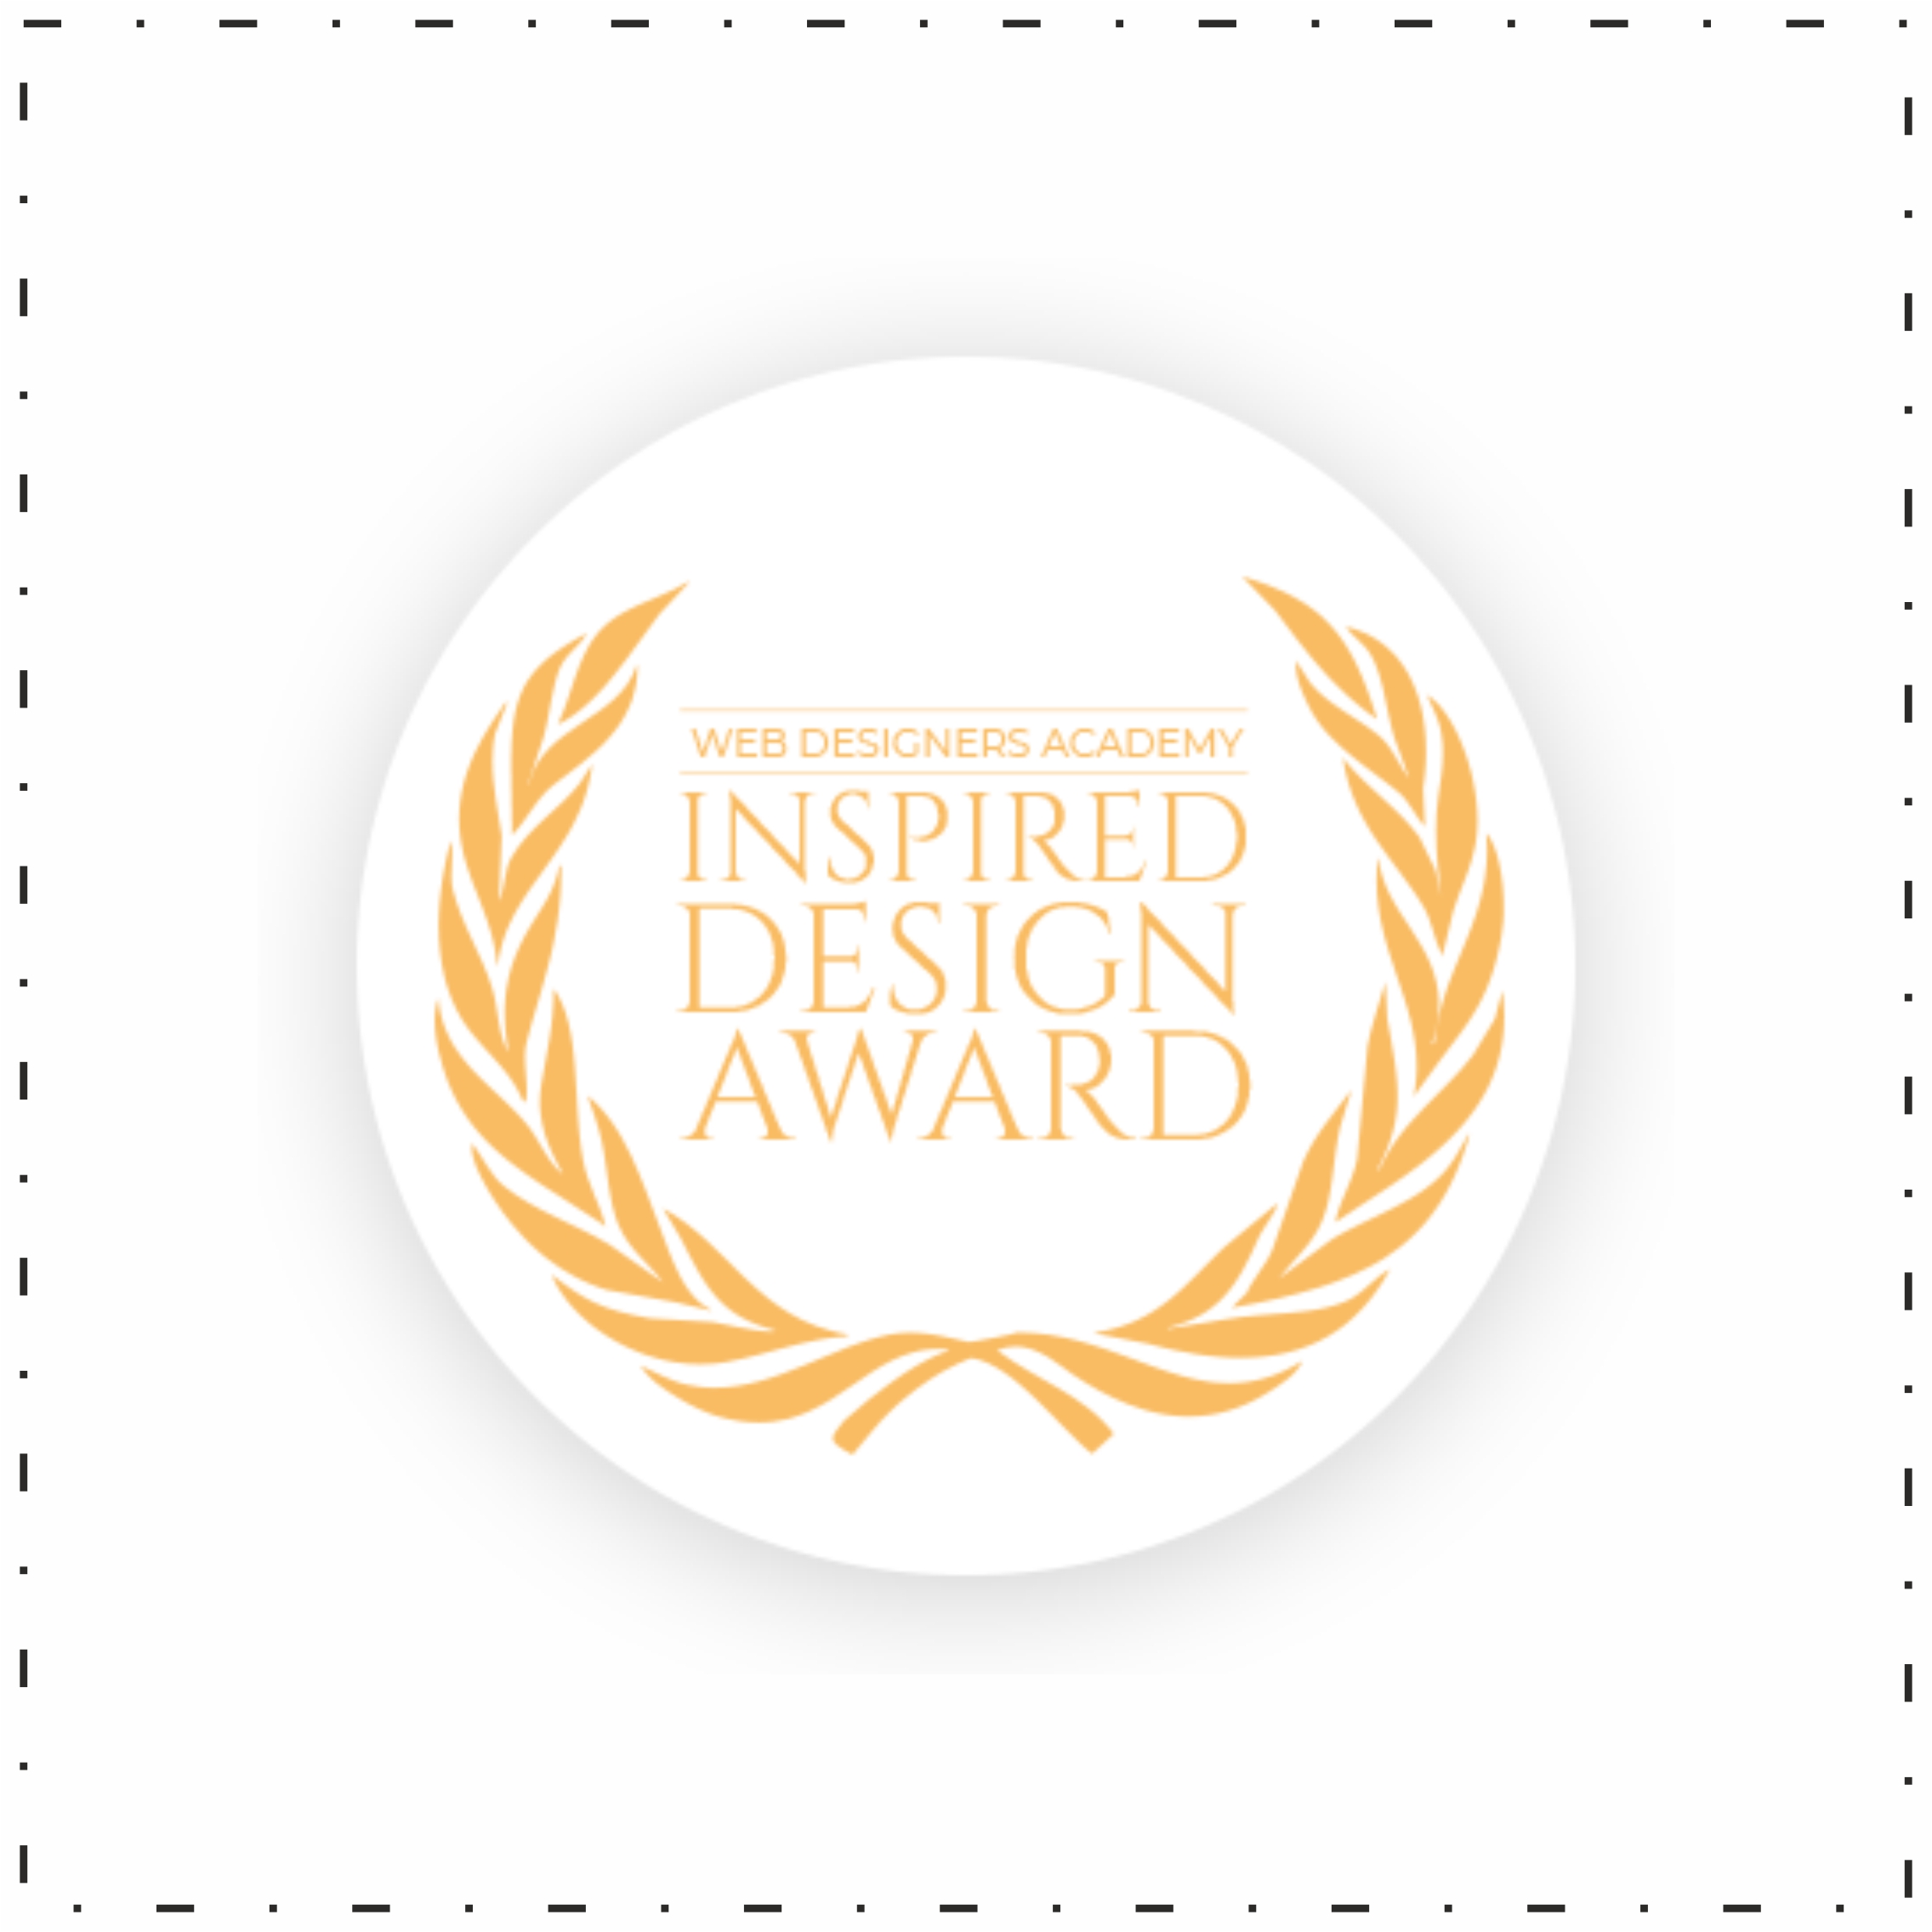 Inspired Design Award 2022